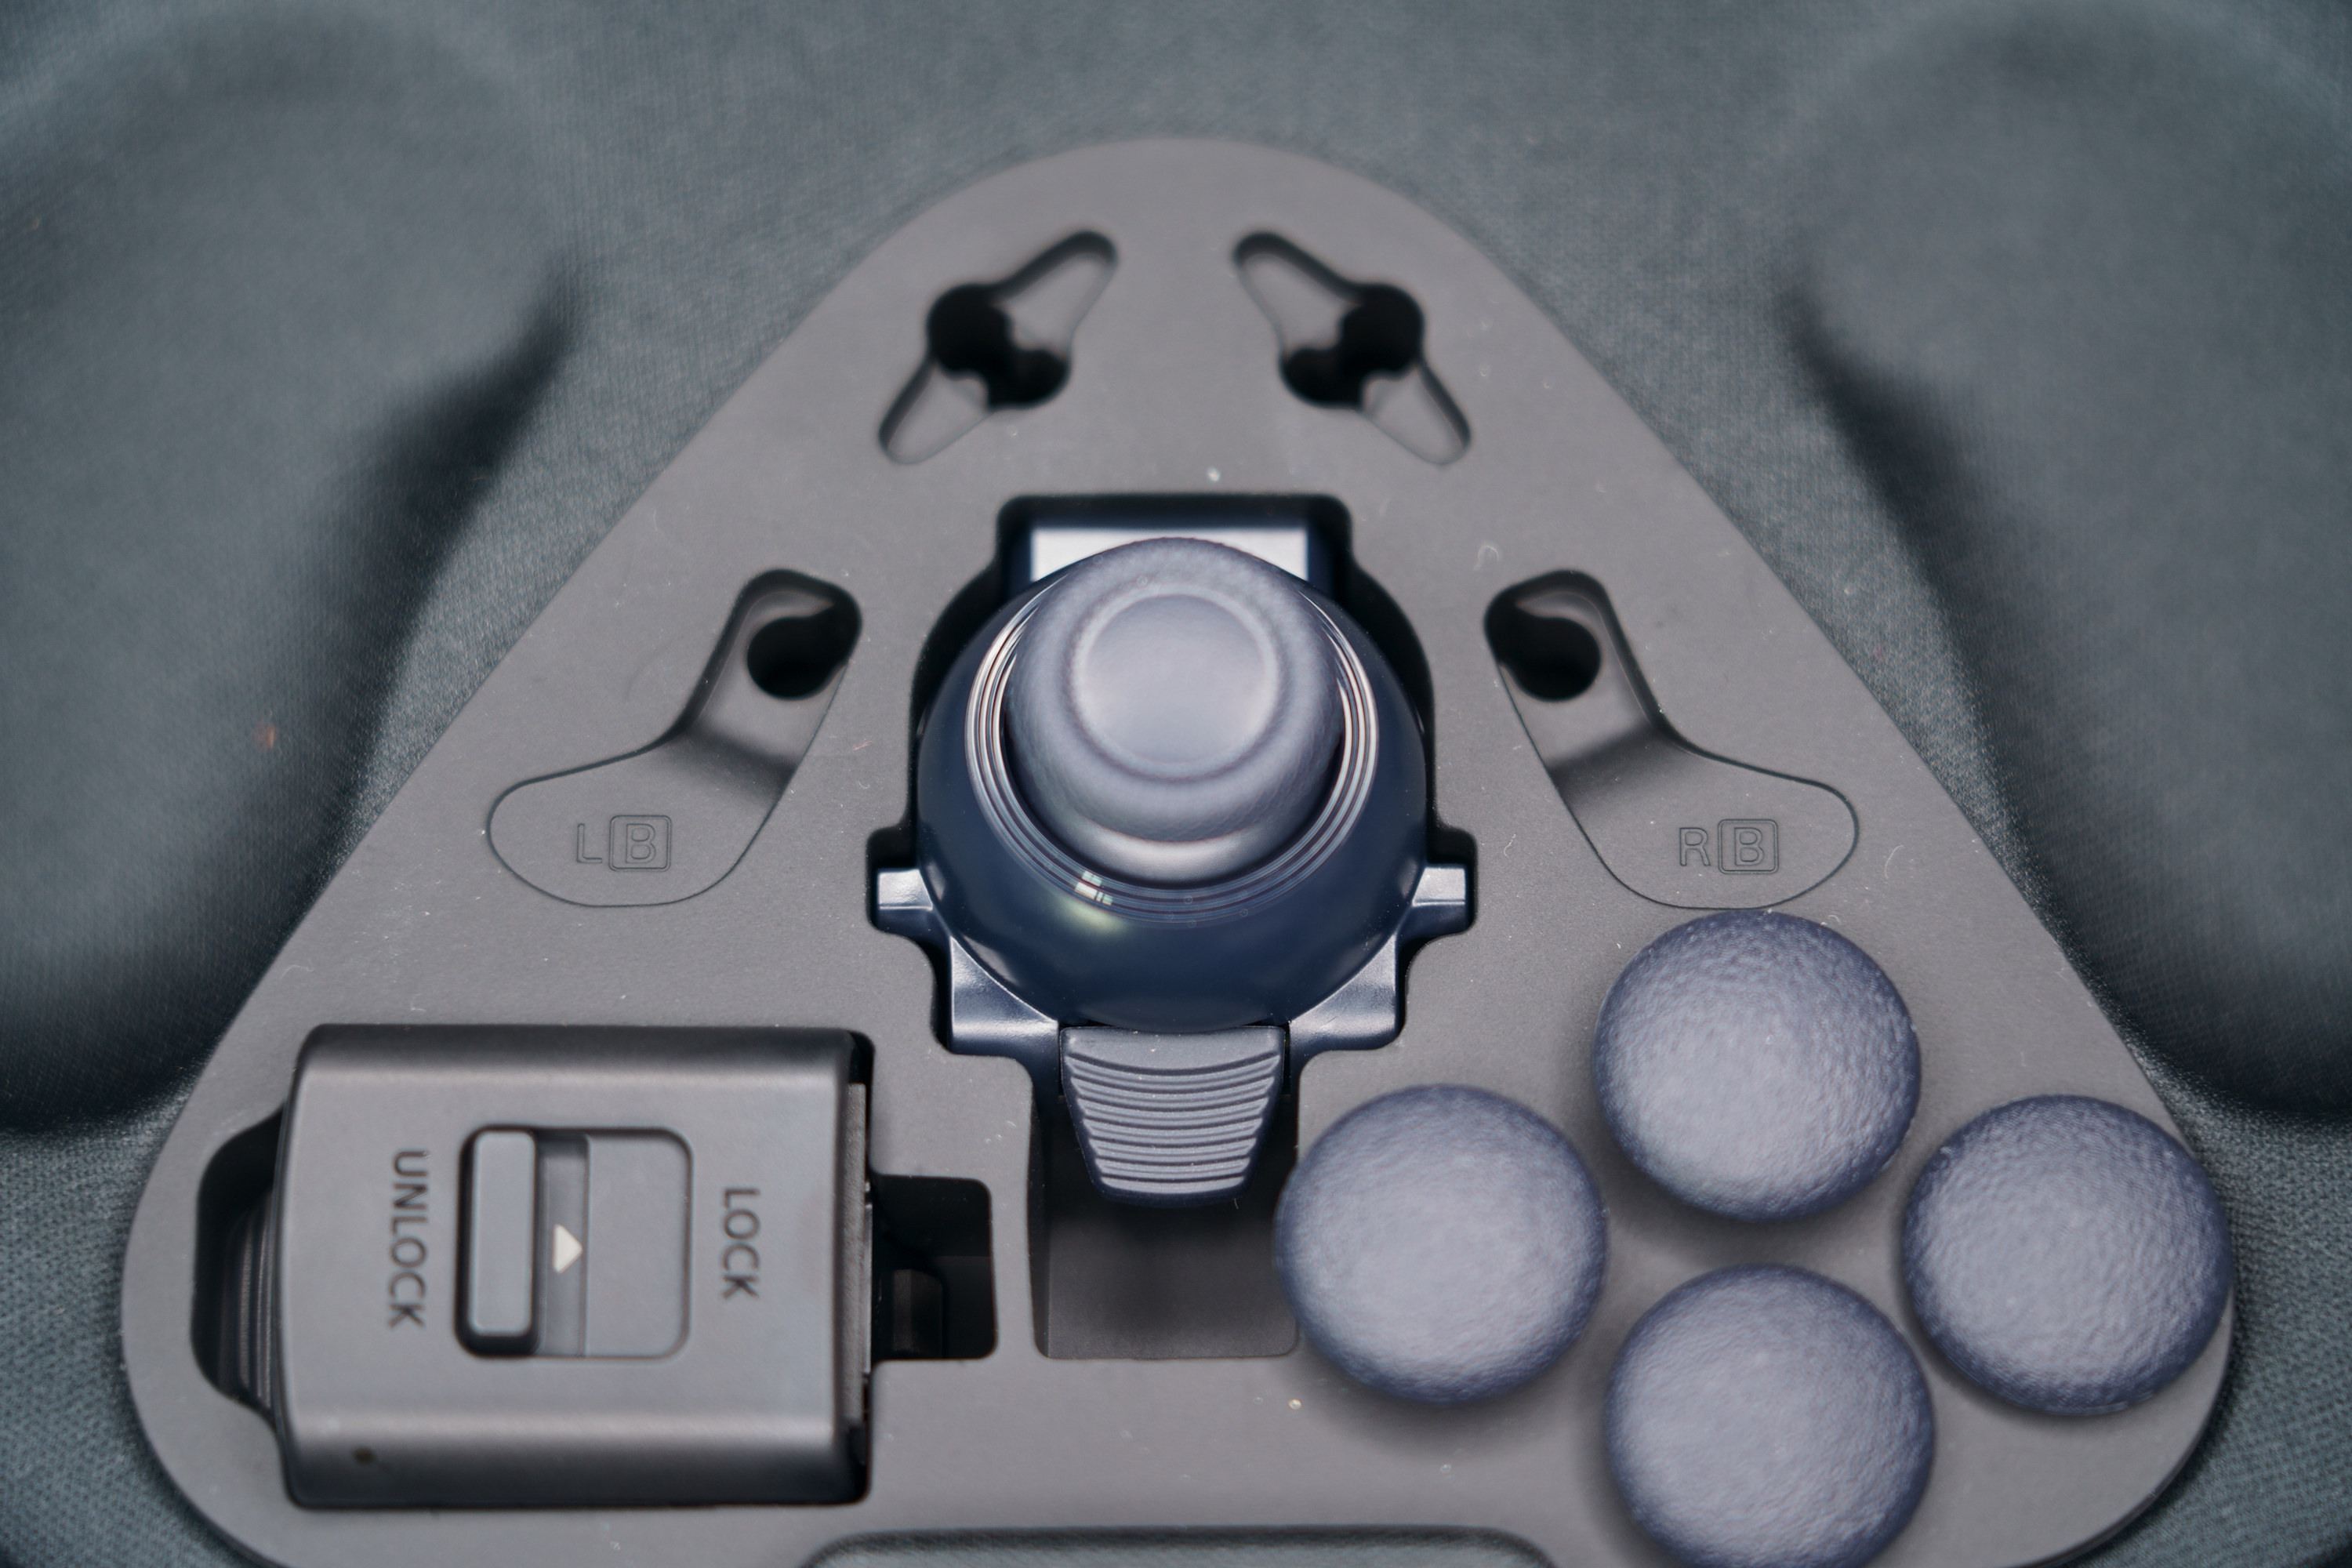 PS5 DualSense Edge 高效能控制器一手开箱 丰富自订功能满足各类型玩家需求插图74